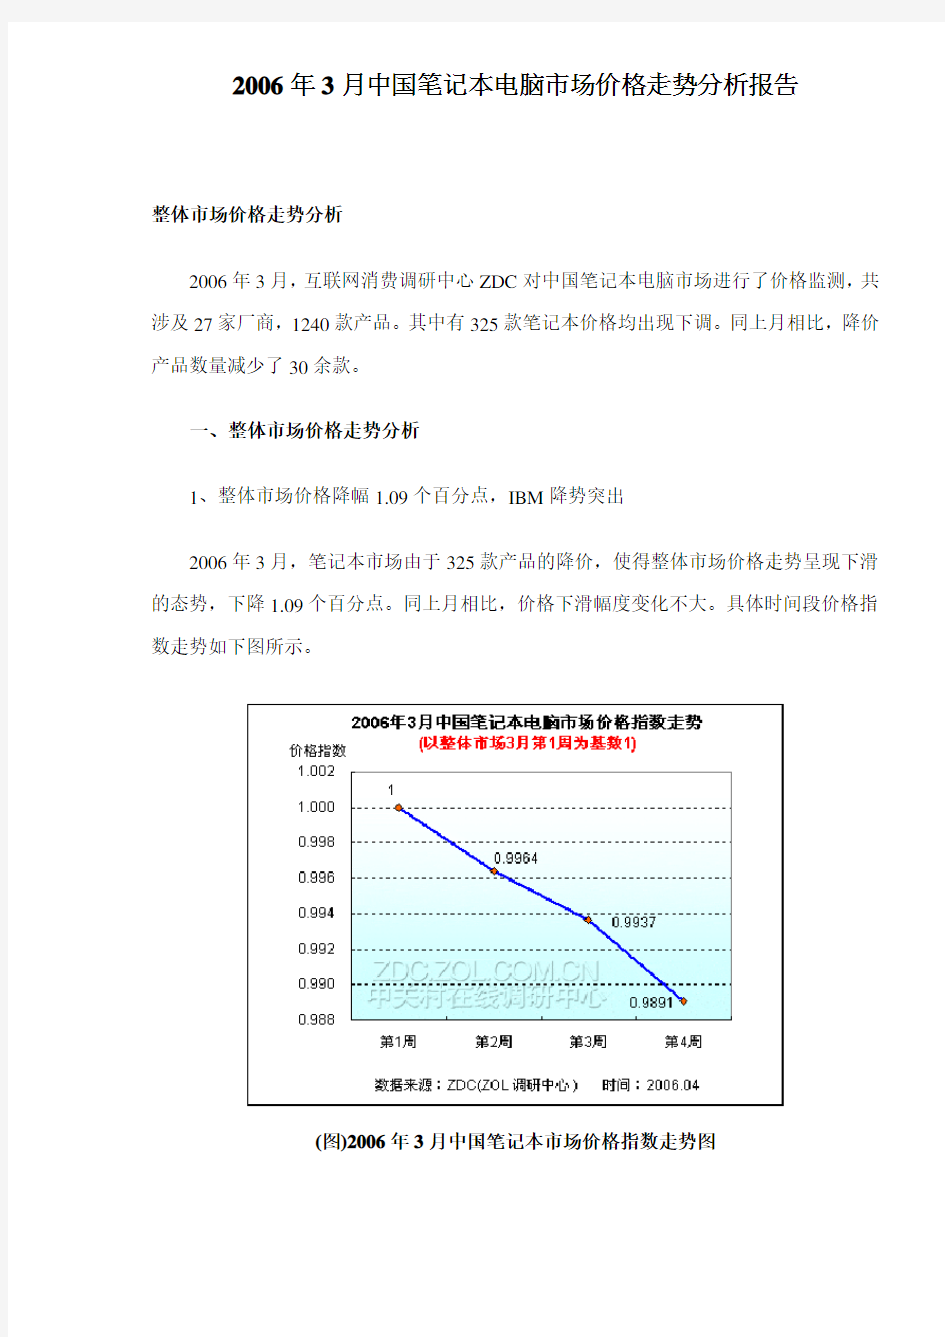 中国笔记本电脑市场价格走势分析报告